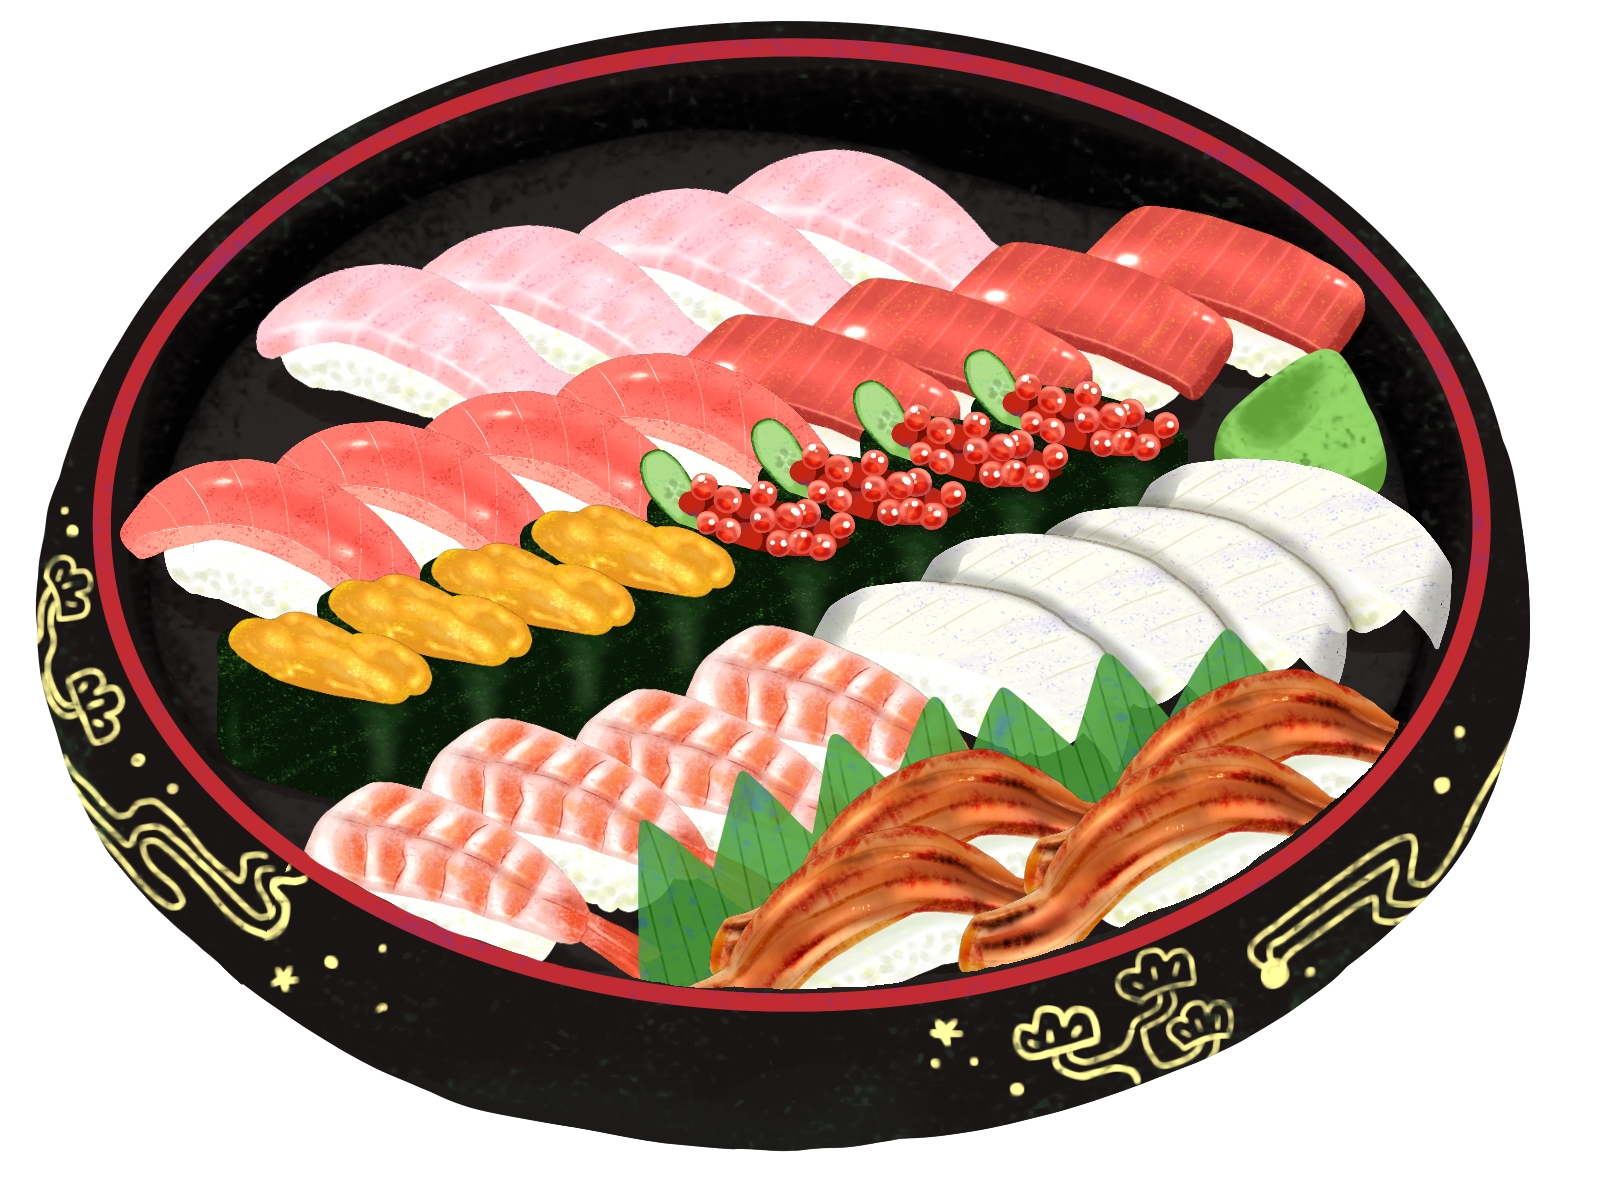 年末年始は“おうちスシロー”を楽しもう！豪華なお寿司セットが期間限定で販売。ネット注文の早割でお得に買えちゃうキャンペーンも♪